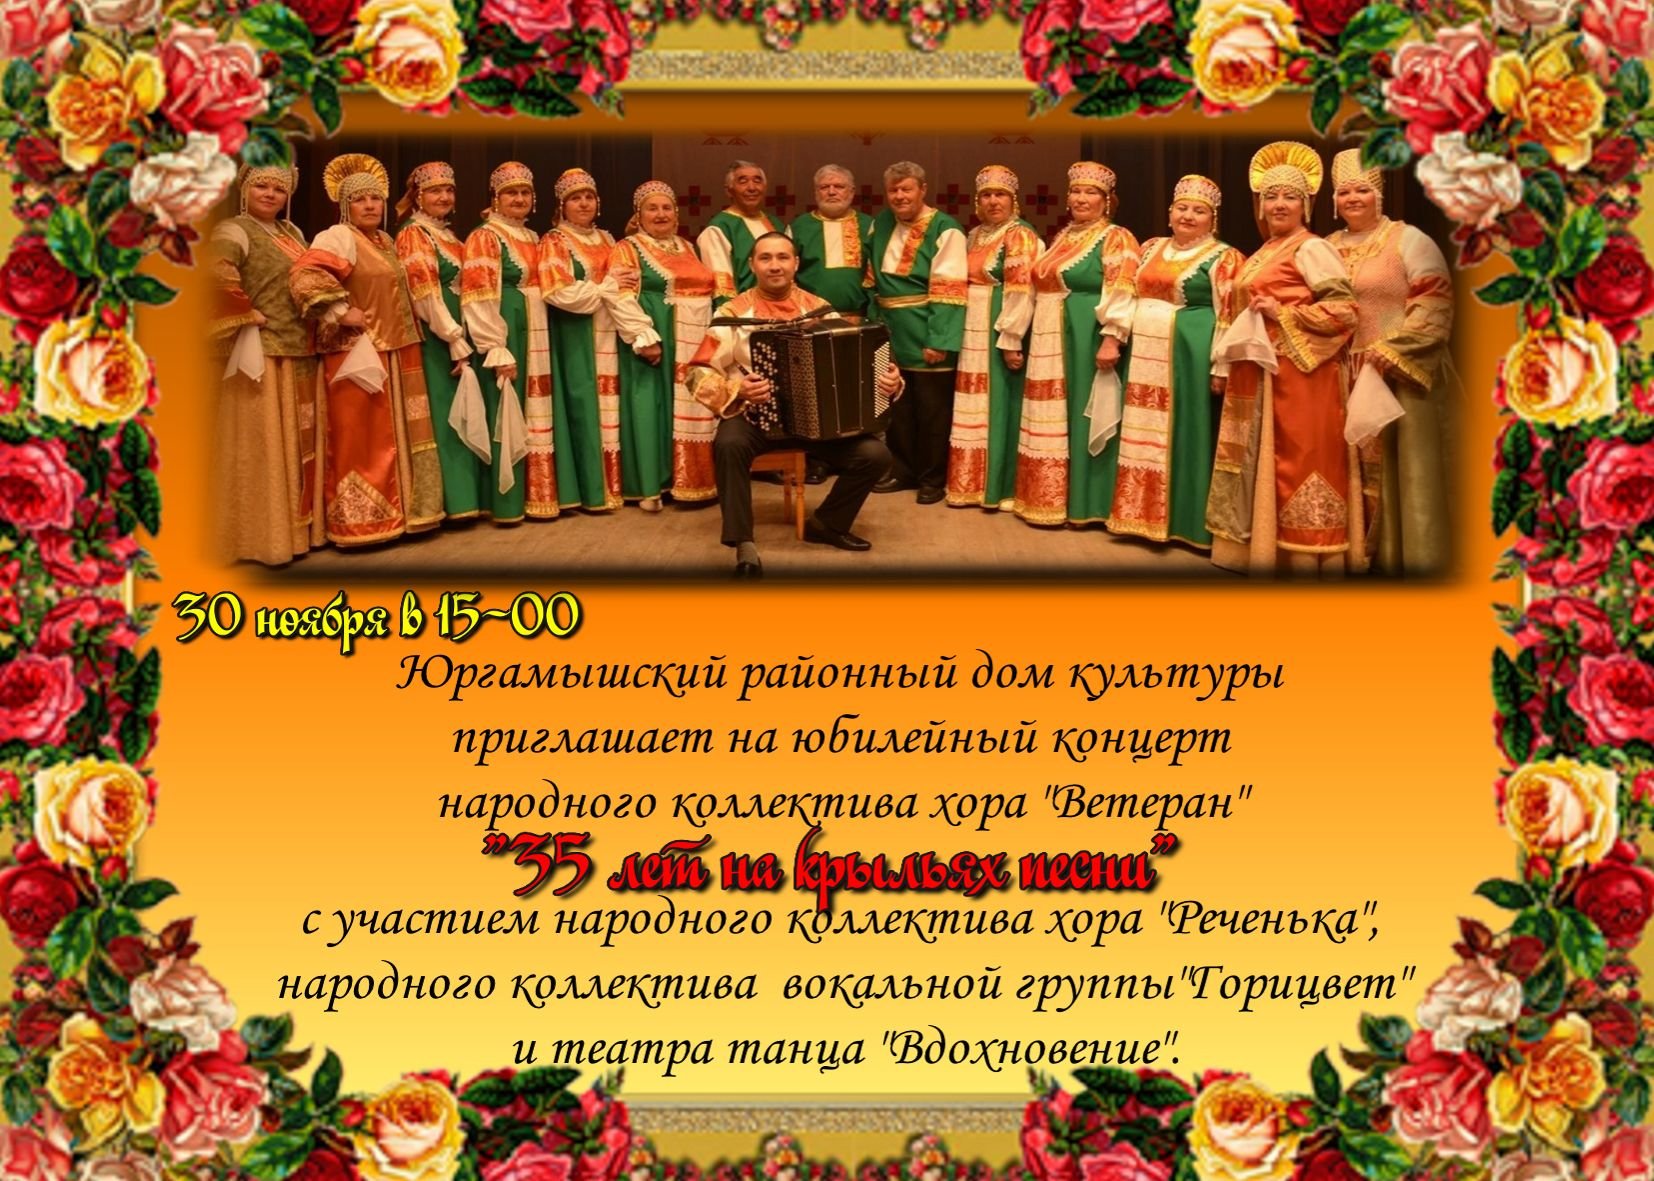 Карпогорский народный хор отметил 70‑летний юбилей программой «Ты взойди, солнце красное»